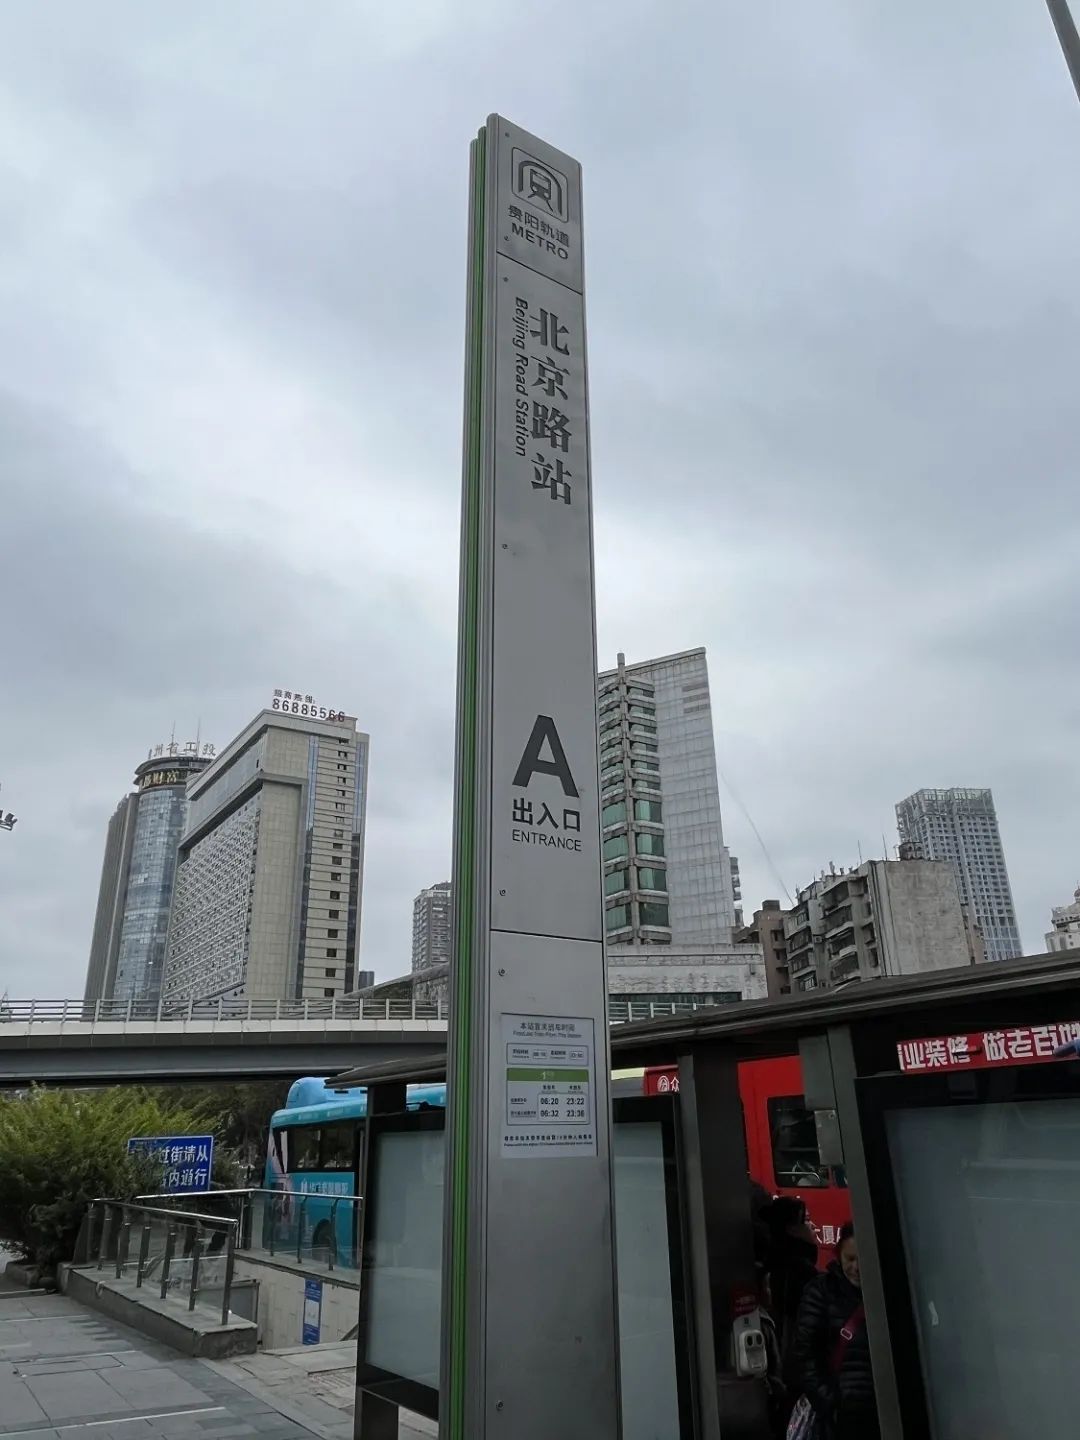 1号线与3号线换乘站点:北京路站贵阳轨道交通1号线与3号线在北京路站